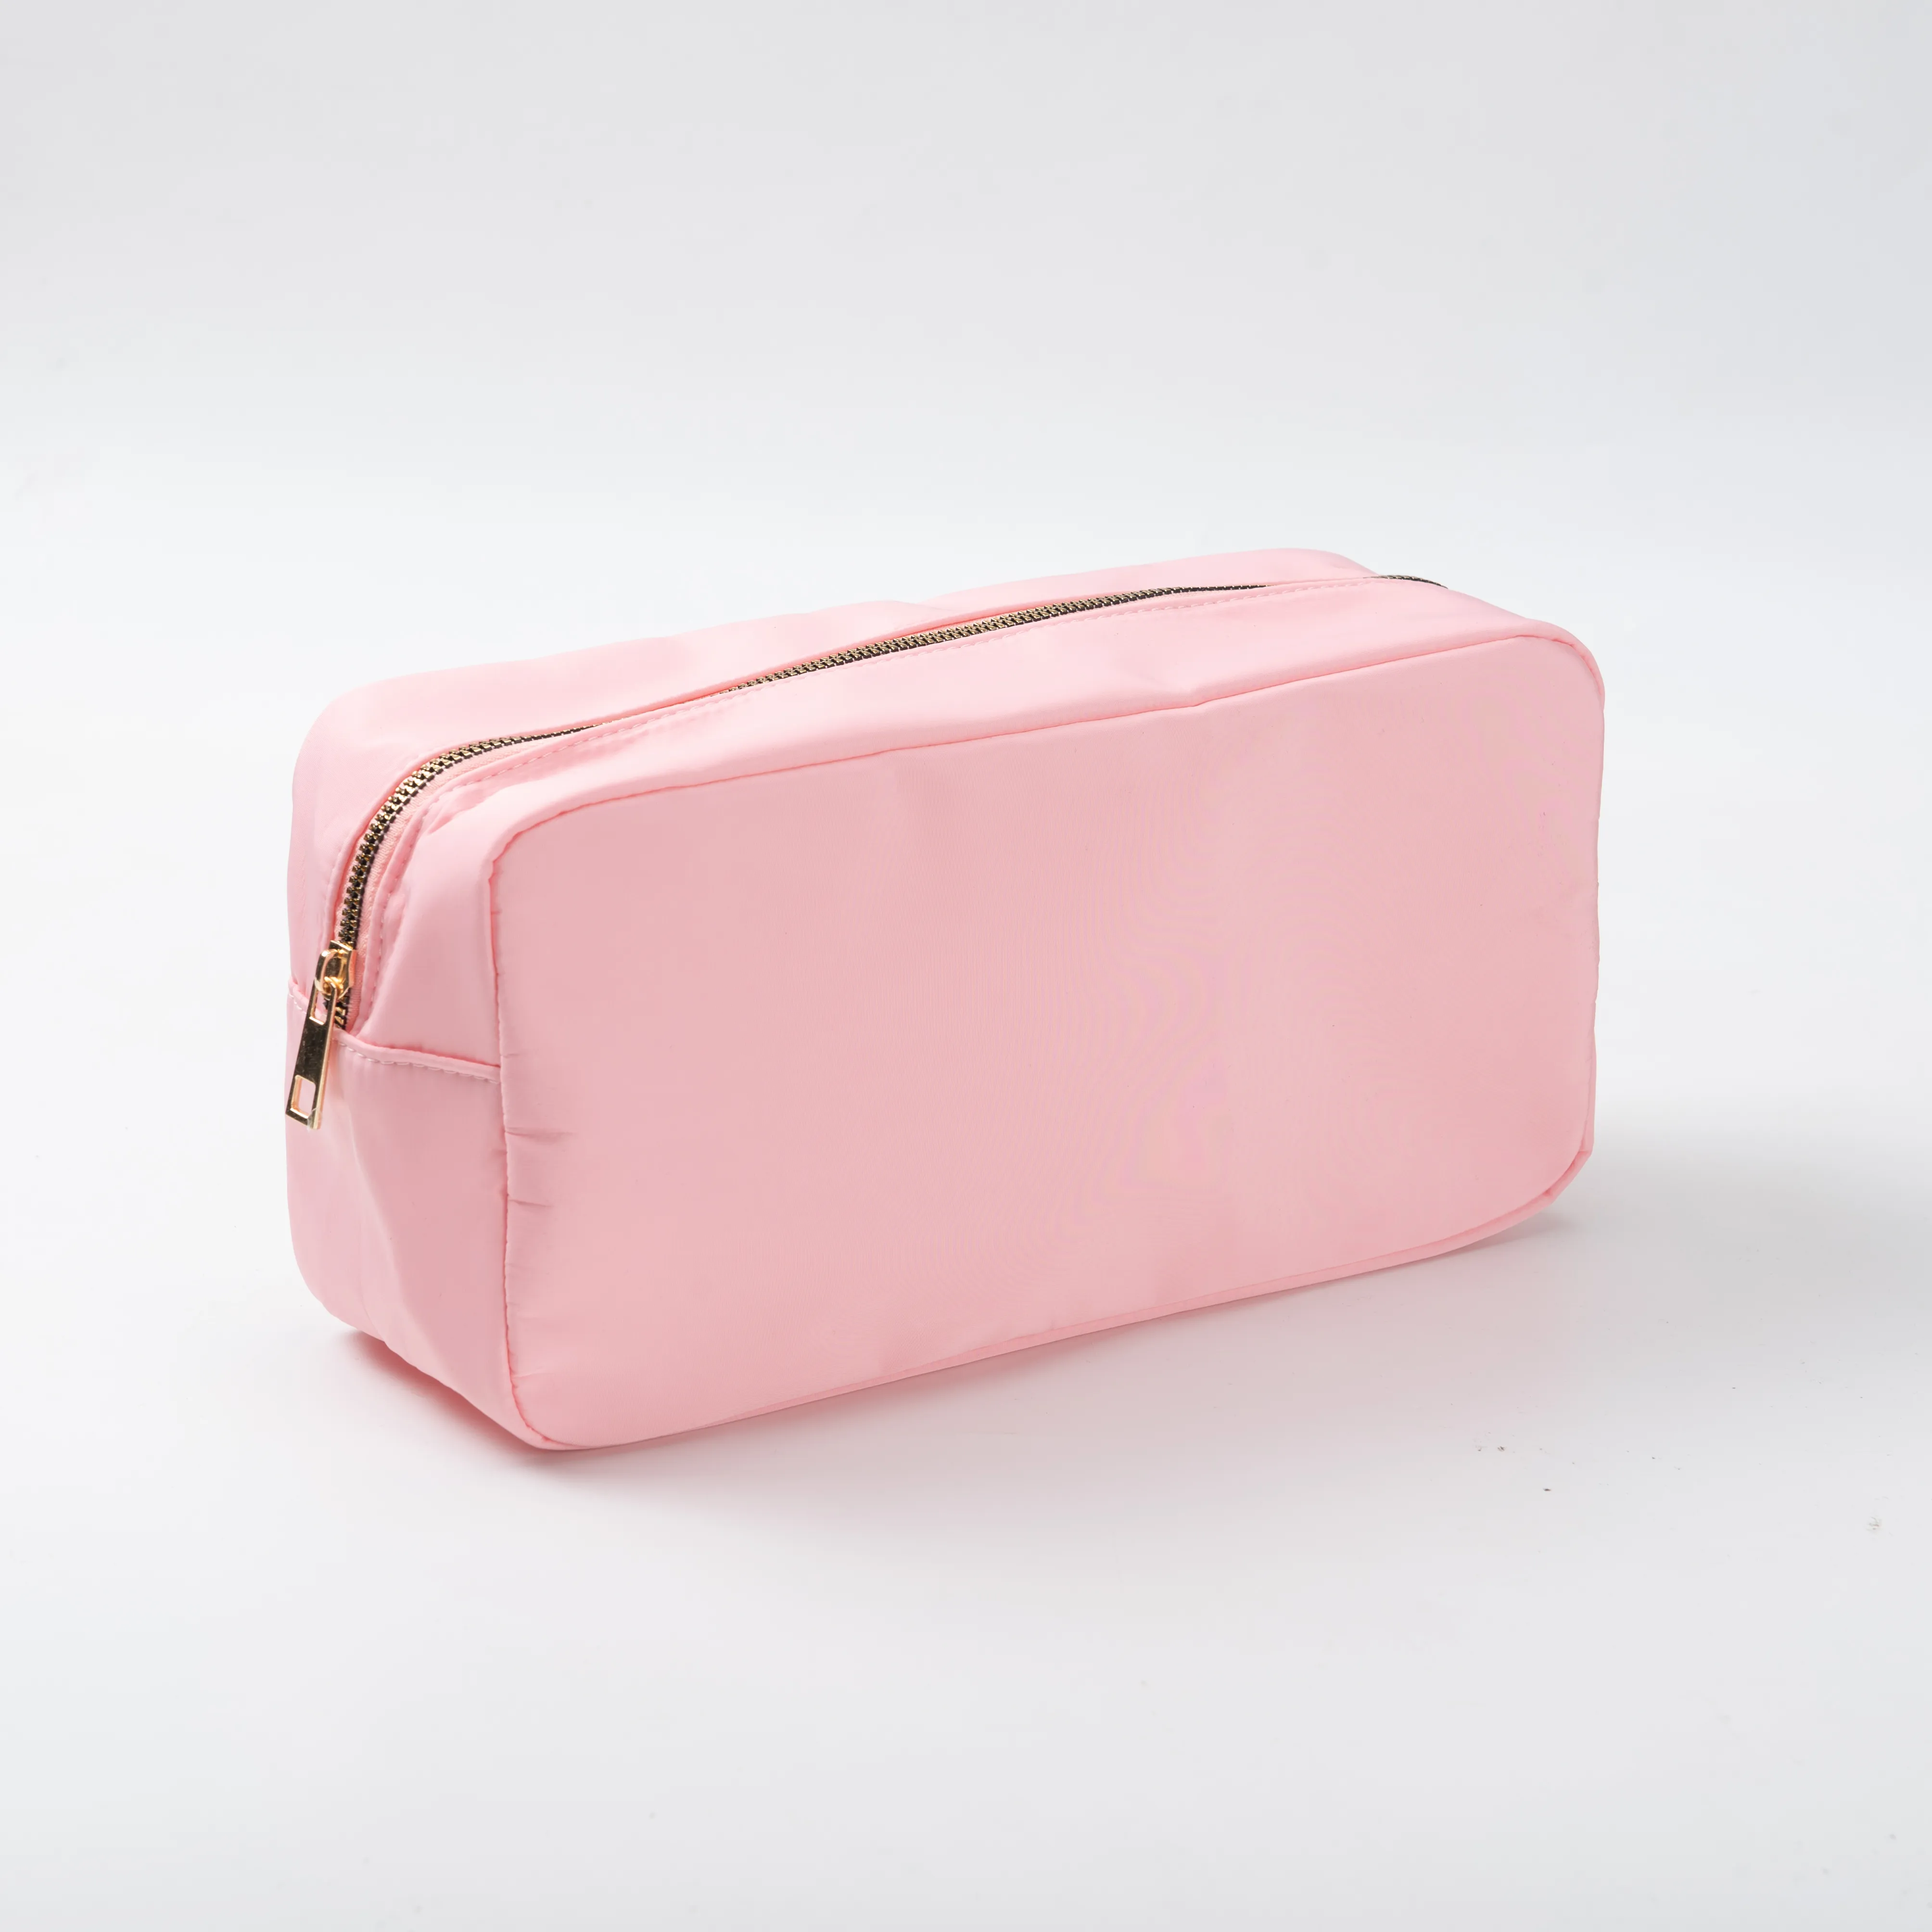 Estoque Multi Cores Sem MOQ Nylon Grande Saco Cosmético Zipper Higiene Pessoal Organizador Bag Para Mulheres Meninas Gift Makeup Pouch